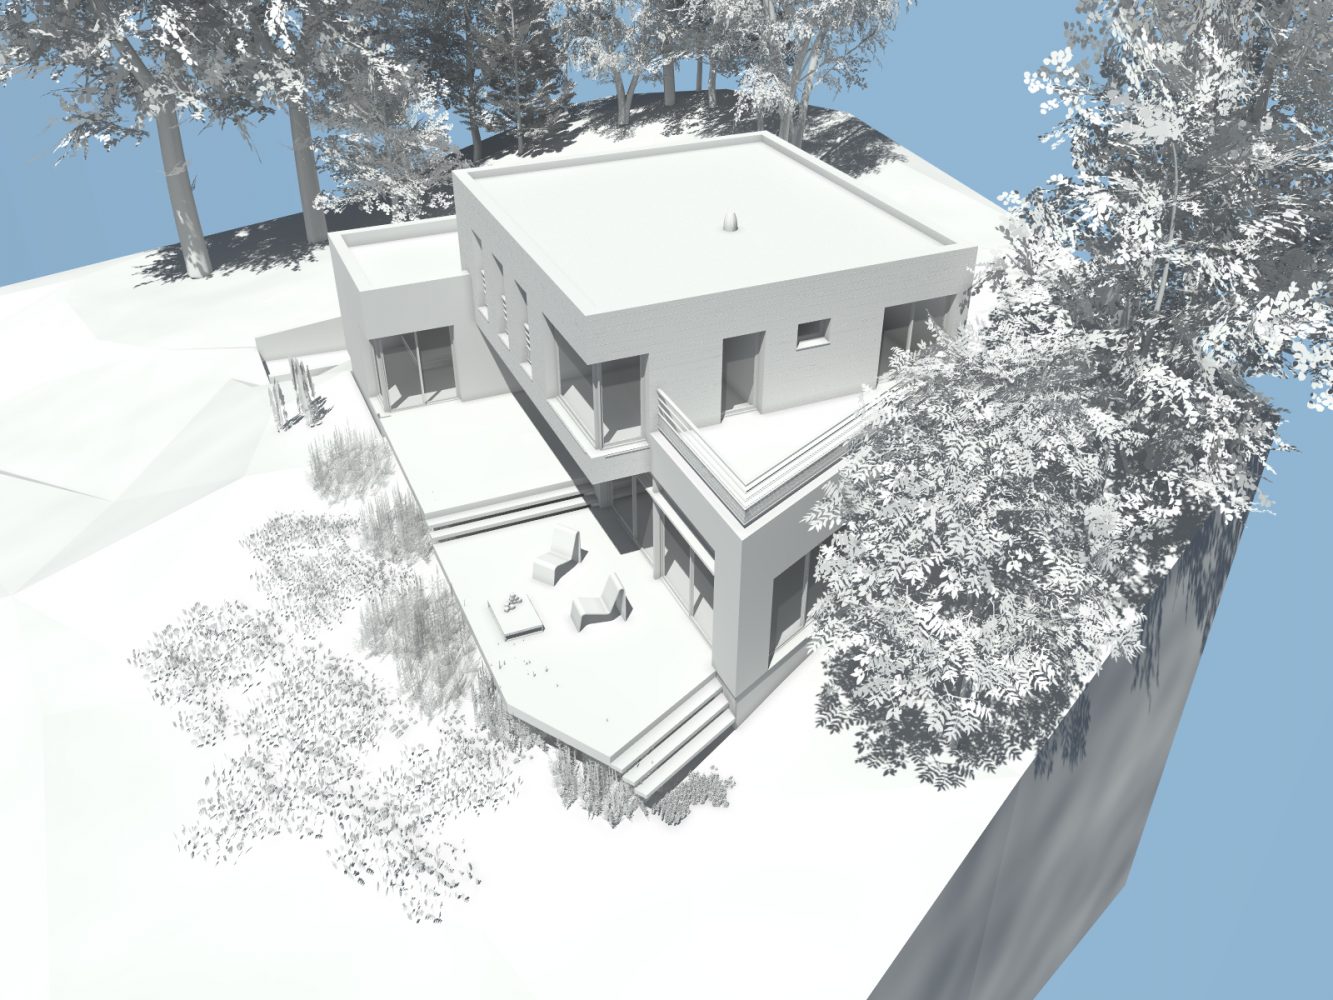 Philippe_Zerbib_Architecte_construction_maisons_ossature_bois_projet_maison_MACIA-CHIU-View 100_3